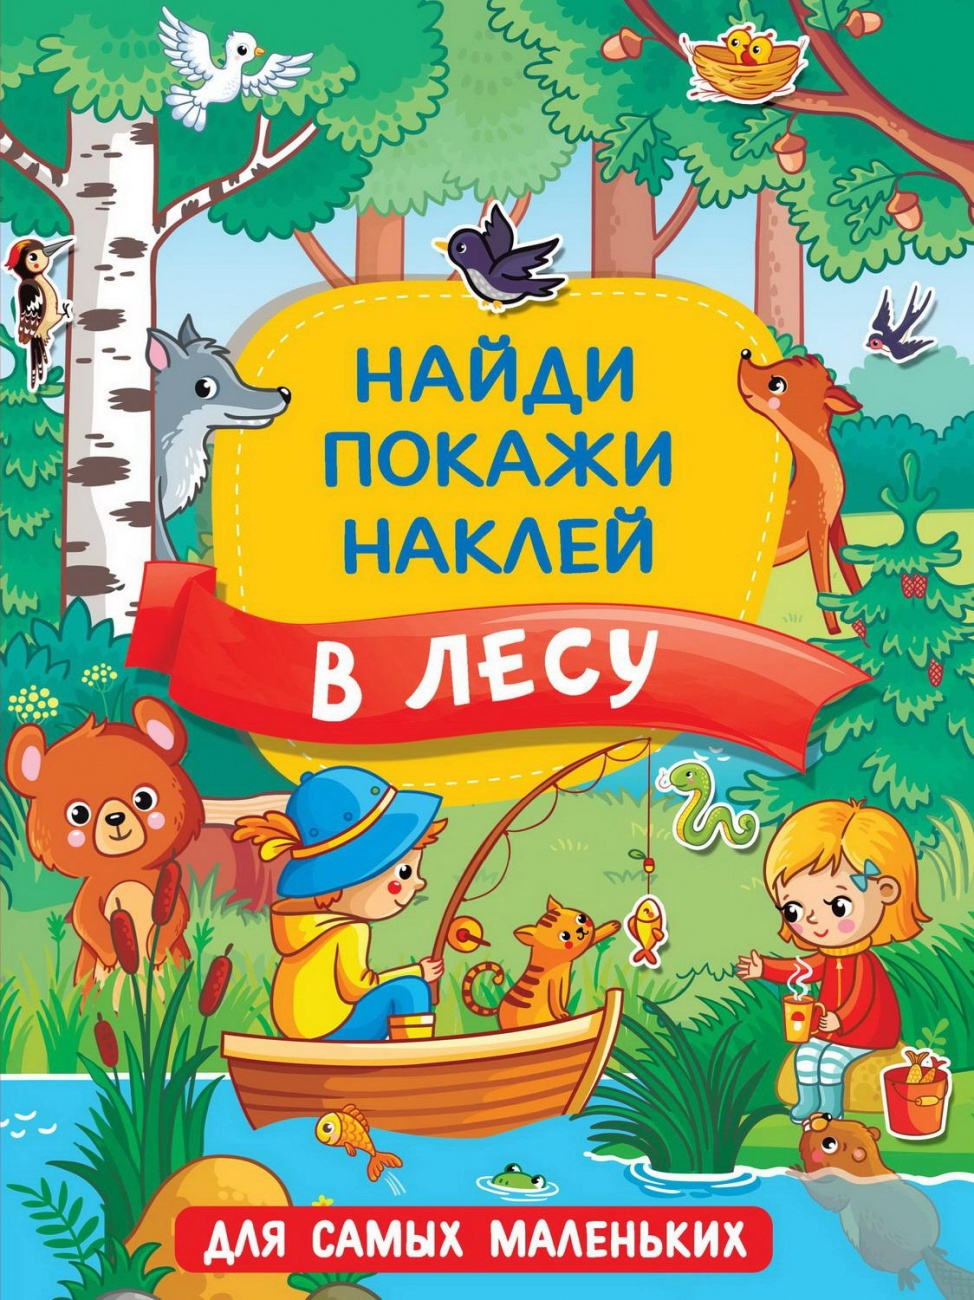 Книга АСТ В лесу 136816-6